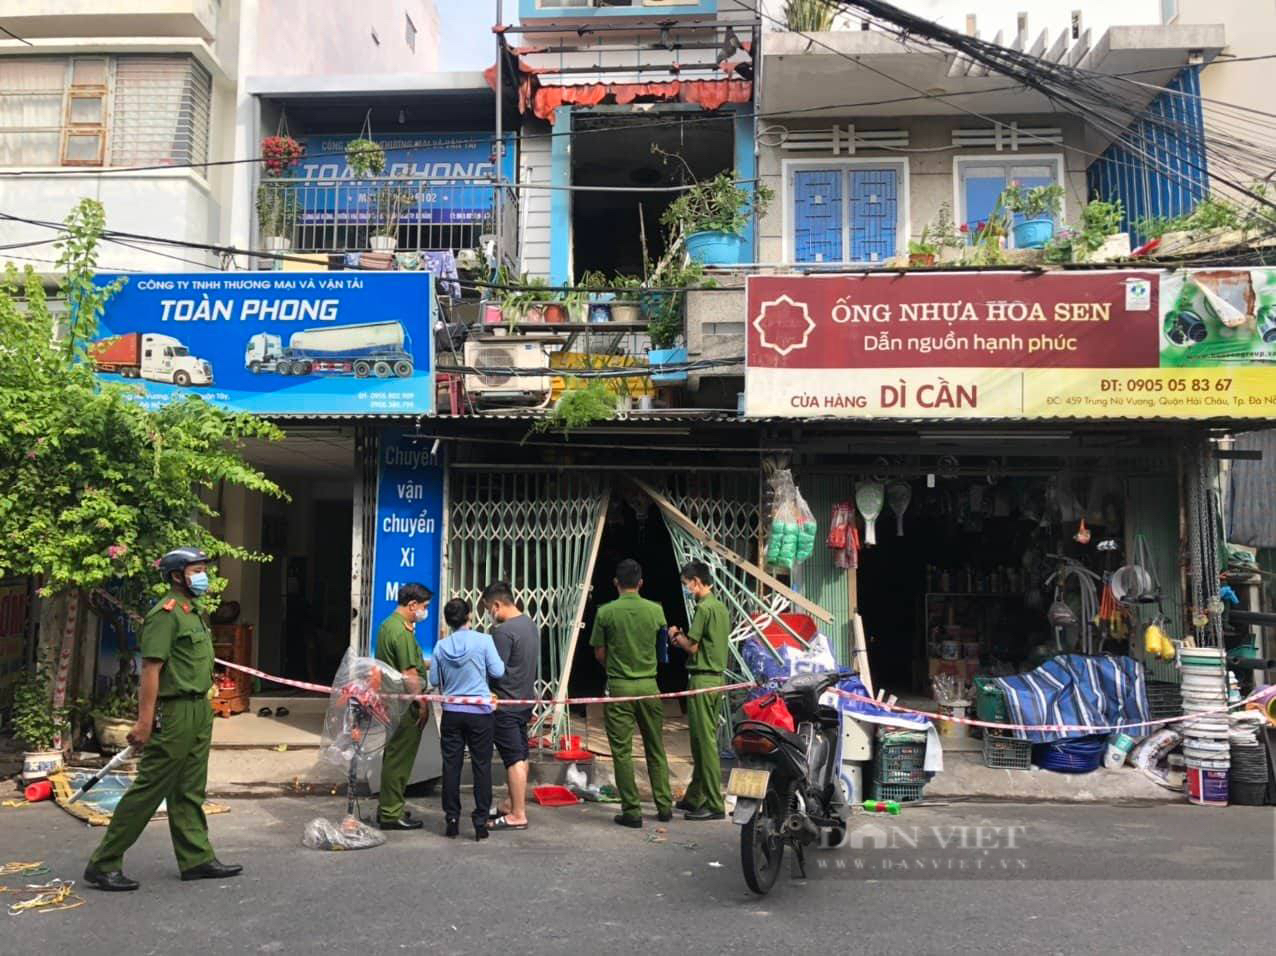 Ngôi nhà ở Đà Nẵng bốc cháy dữ dội khiến 3 người chết - Ảnh 1.